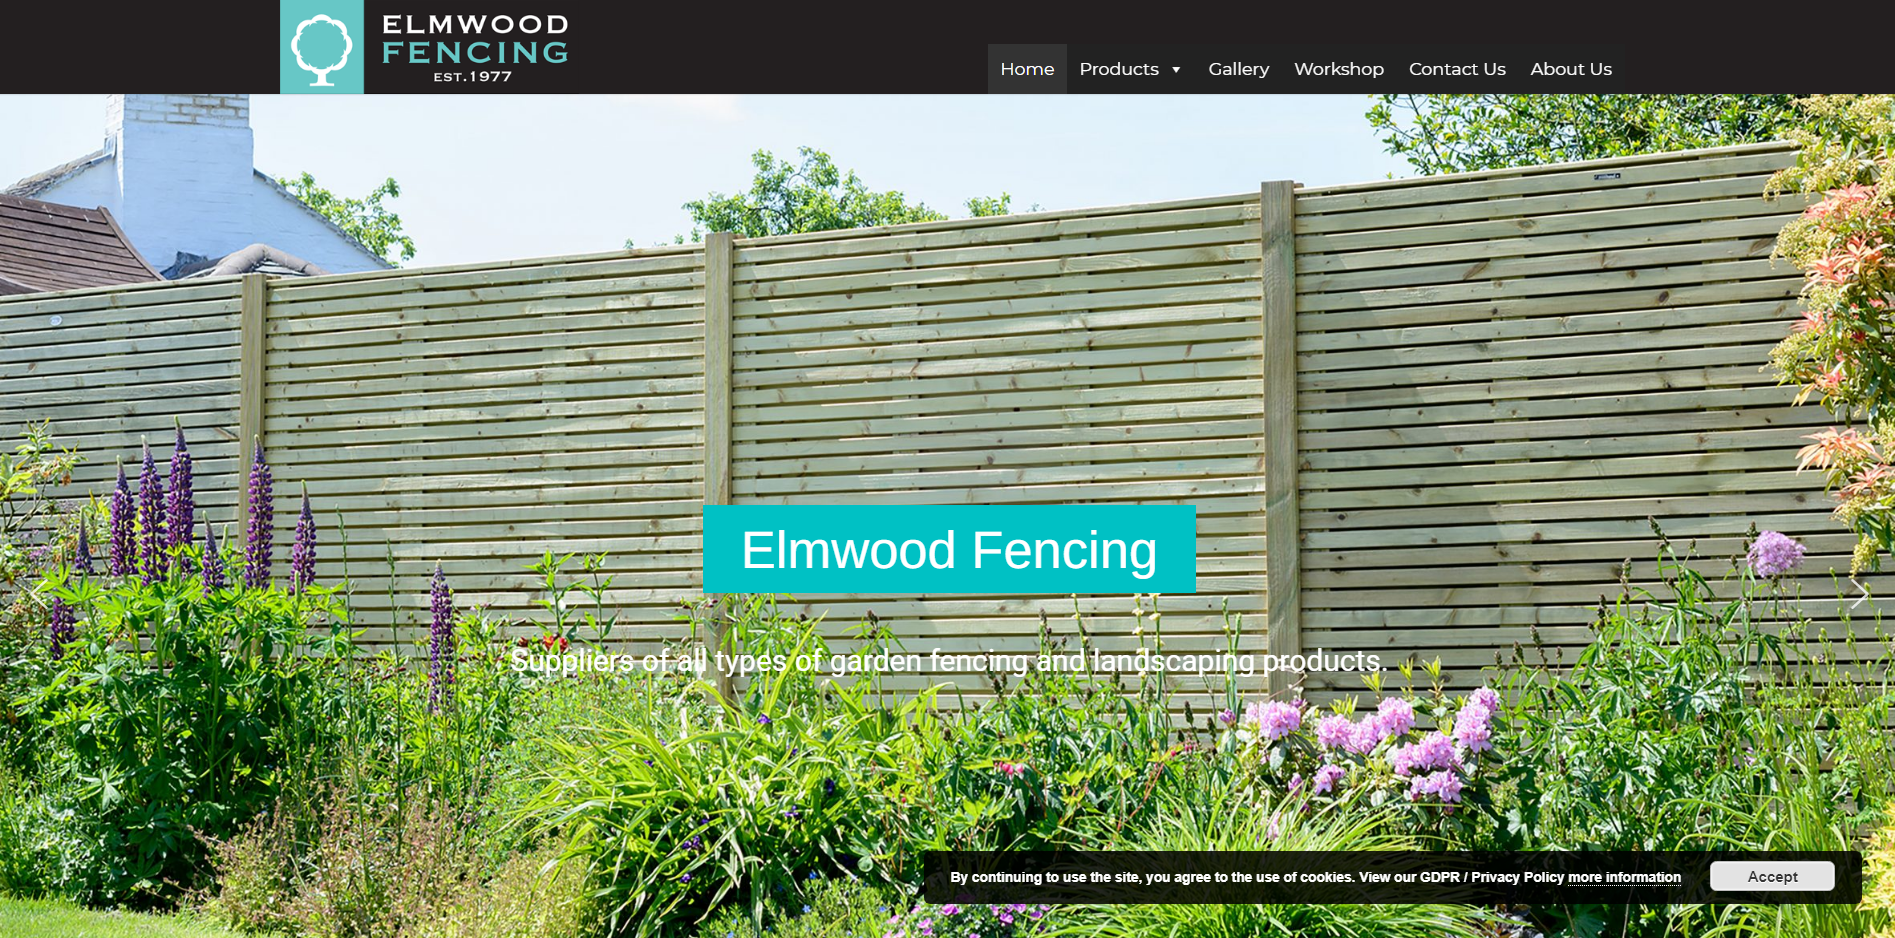 Elmwood Fencing